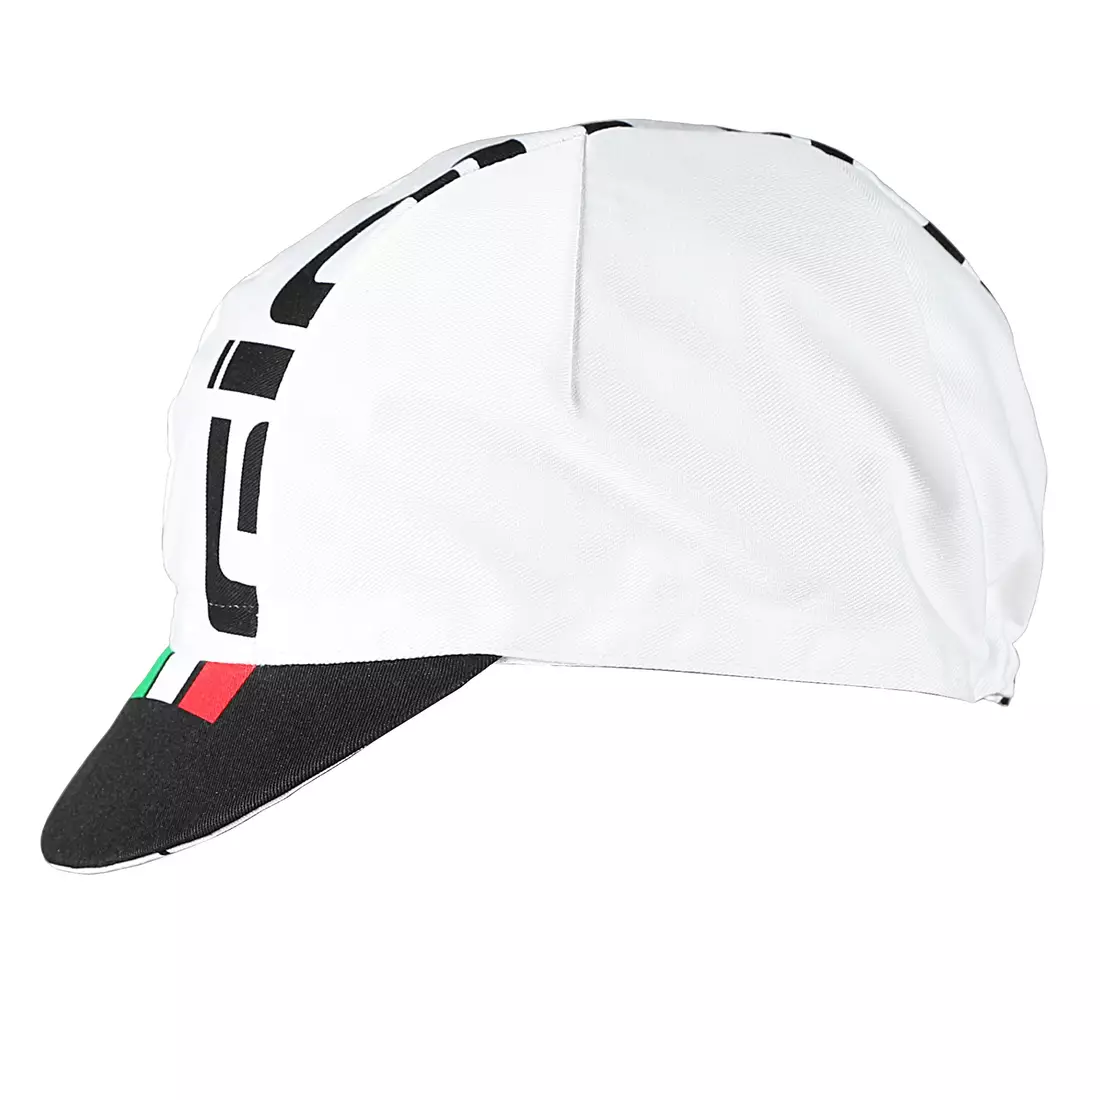 Șapcă de ciclism GIORDANA SS18 - Logo Giordana - Alb/Negru/Italia GICS18-COCA-GIOR-WTBK mărime unica